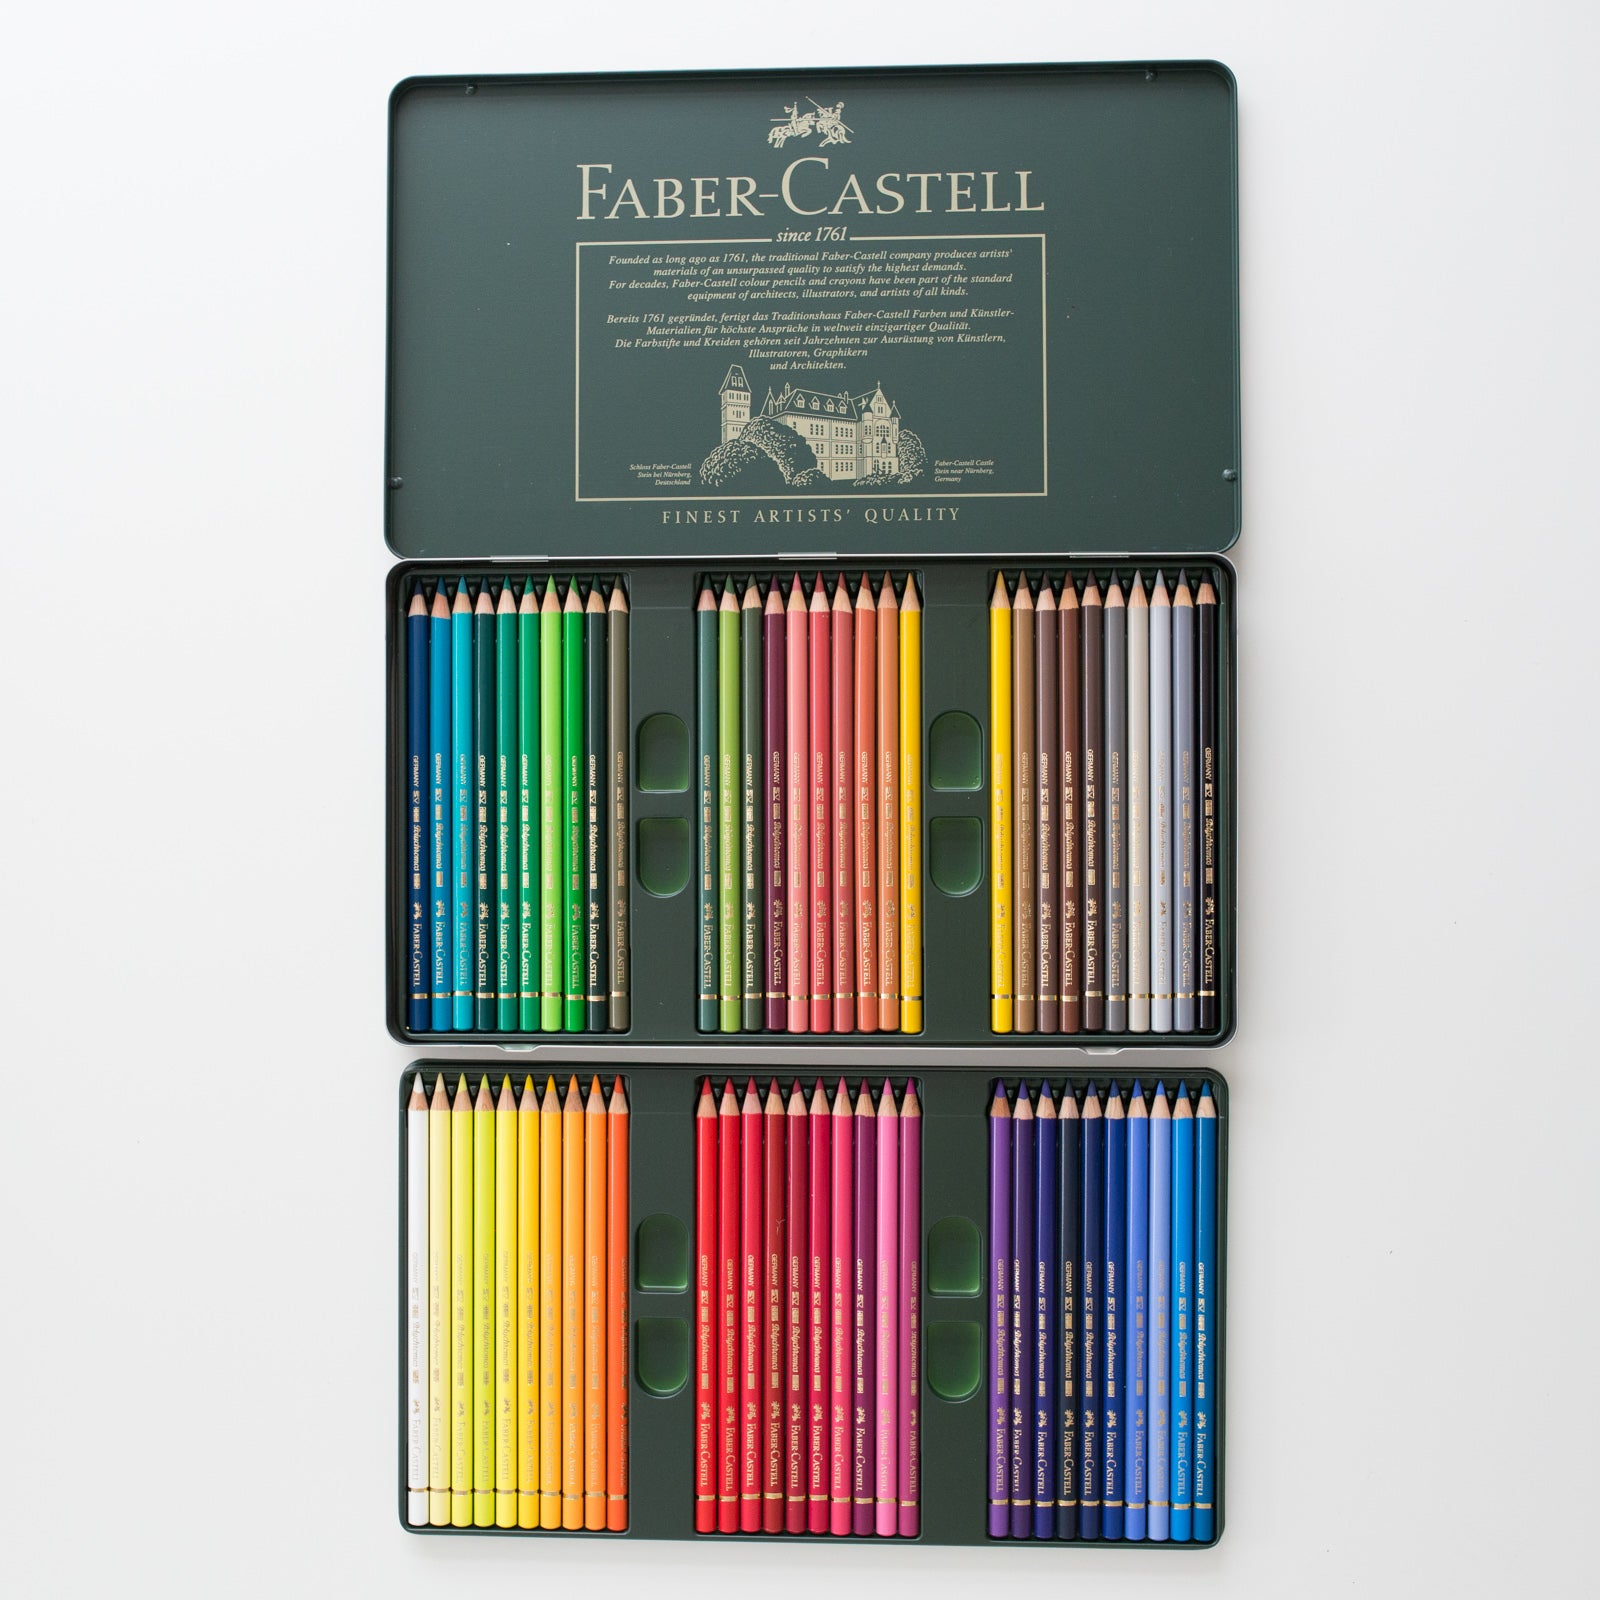 Faber-Castell Polychromos colored pencils review – Veronica